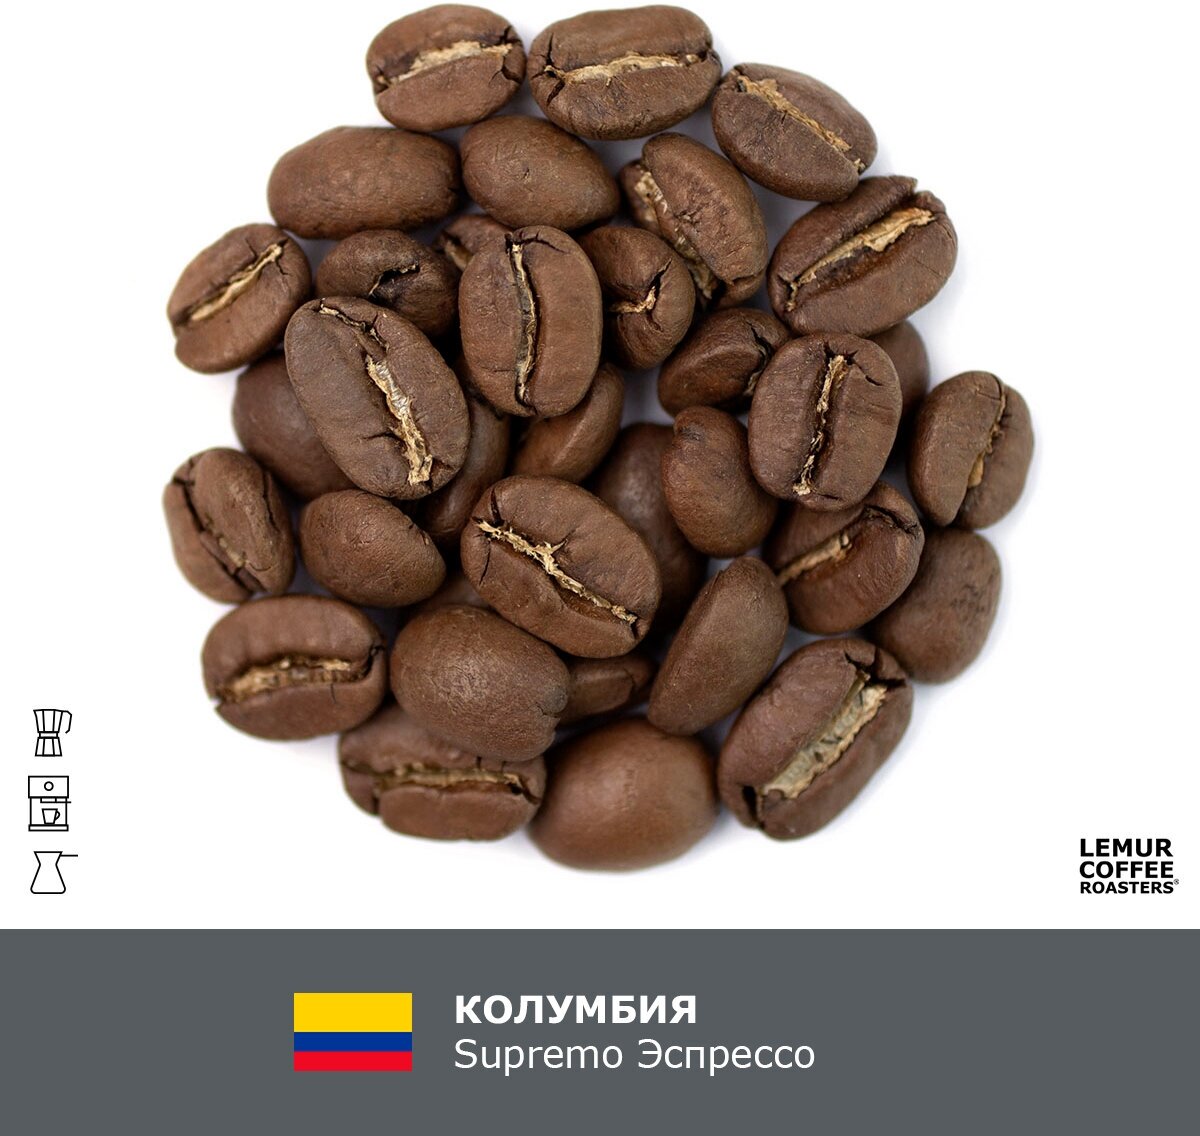 Свежеобжаренный кофе в зернах Колумбия Supremo Эспрессо Lemur Coffee Roasters, 1кг - фотография № 2